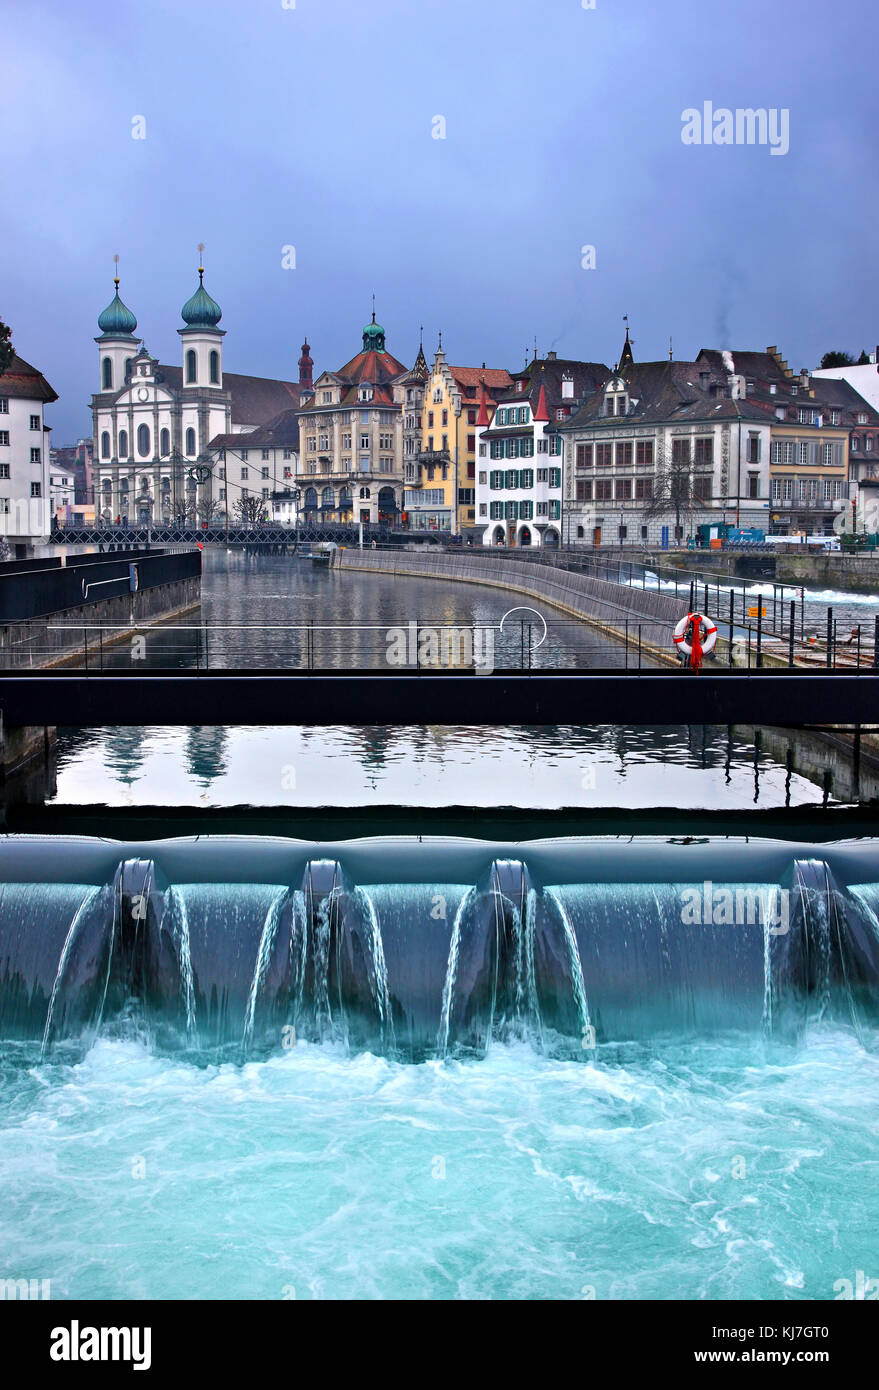 Die Nadelwehr, eine Art Kanal, der zur Regulierung des Niveaus von Reuss und Luzerner See benutzt wurde, nahe der Spreuer Brücke, Luzerner Stadt, Schweiz. Stockfoto